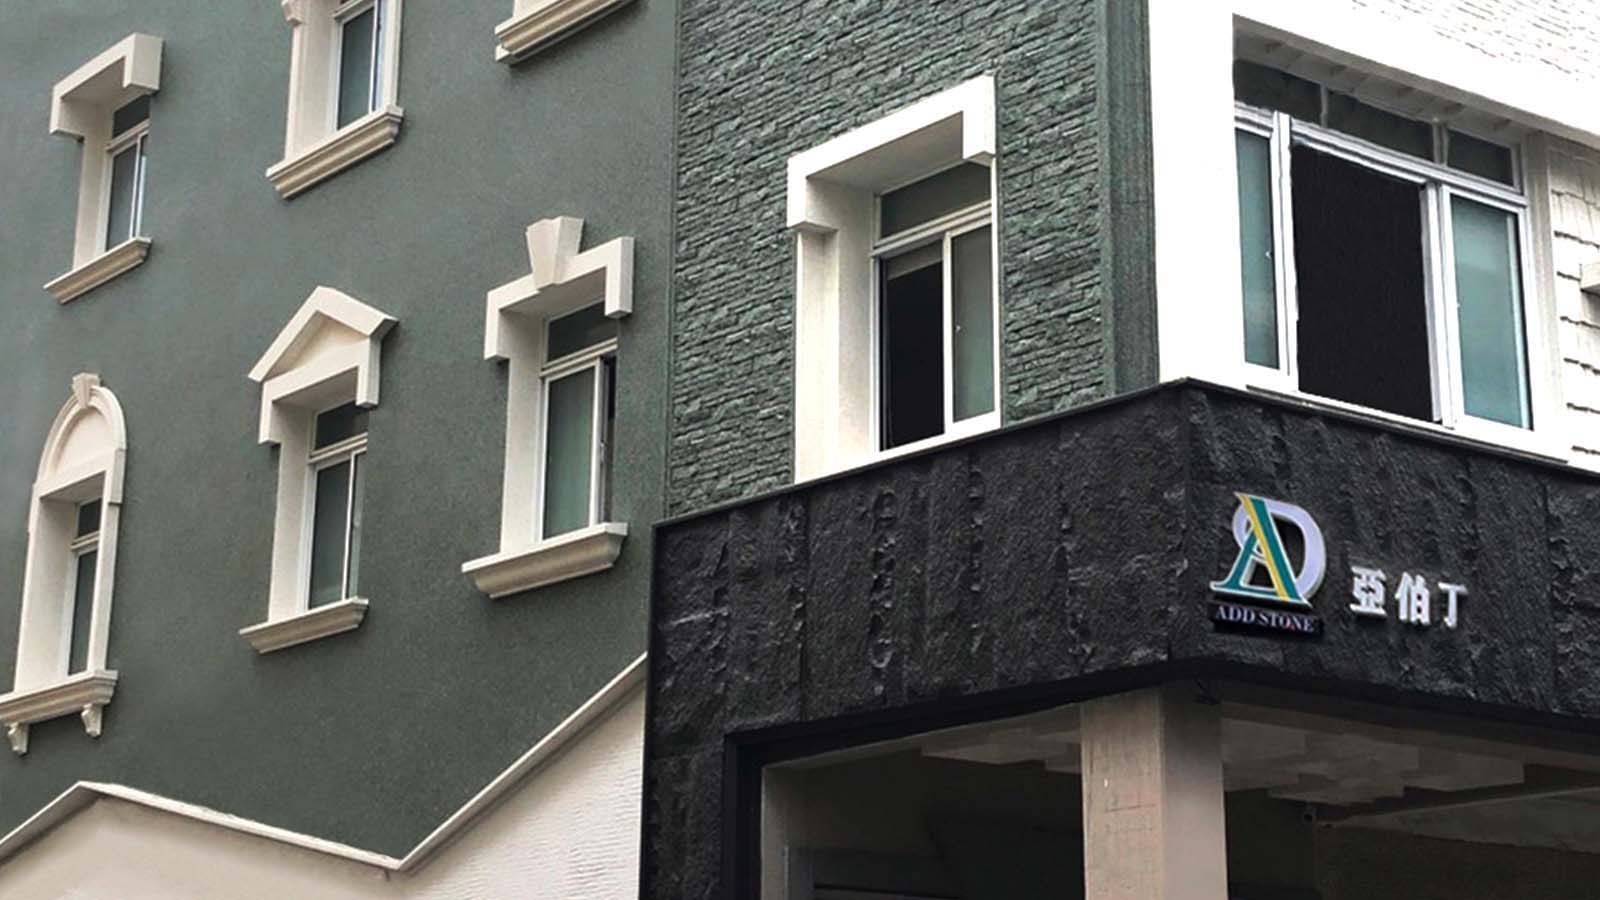 Aberdeen tiene su sede en Kaohsiung. El edificio de ADD STONE está pulverizado con el revestimiento de piedra sintética, que se asemeja a un muro de granito.